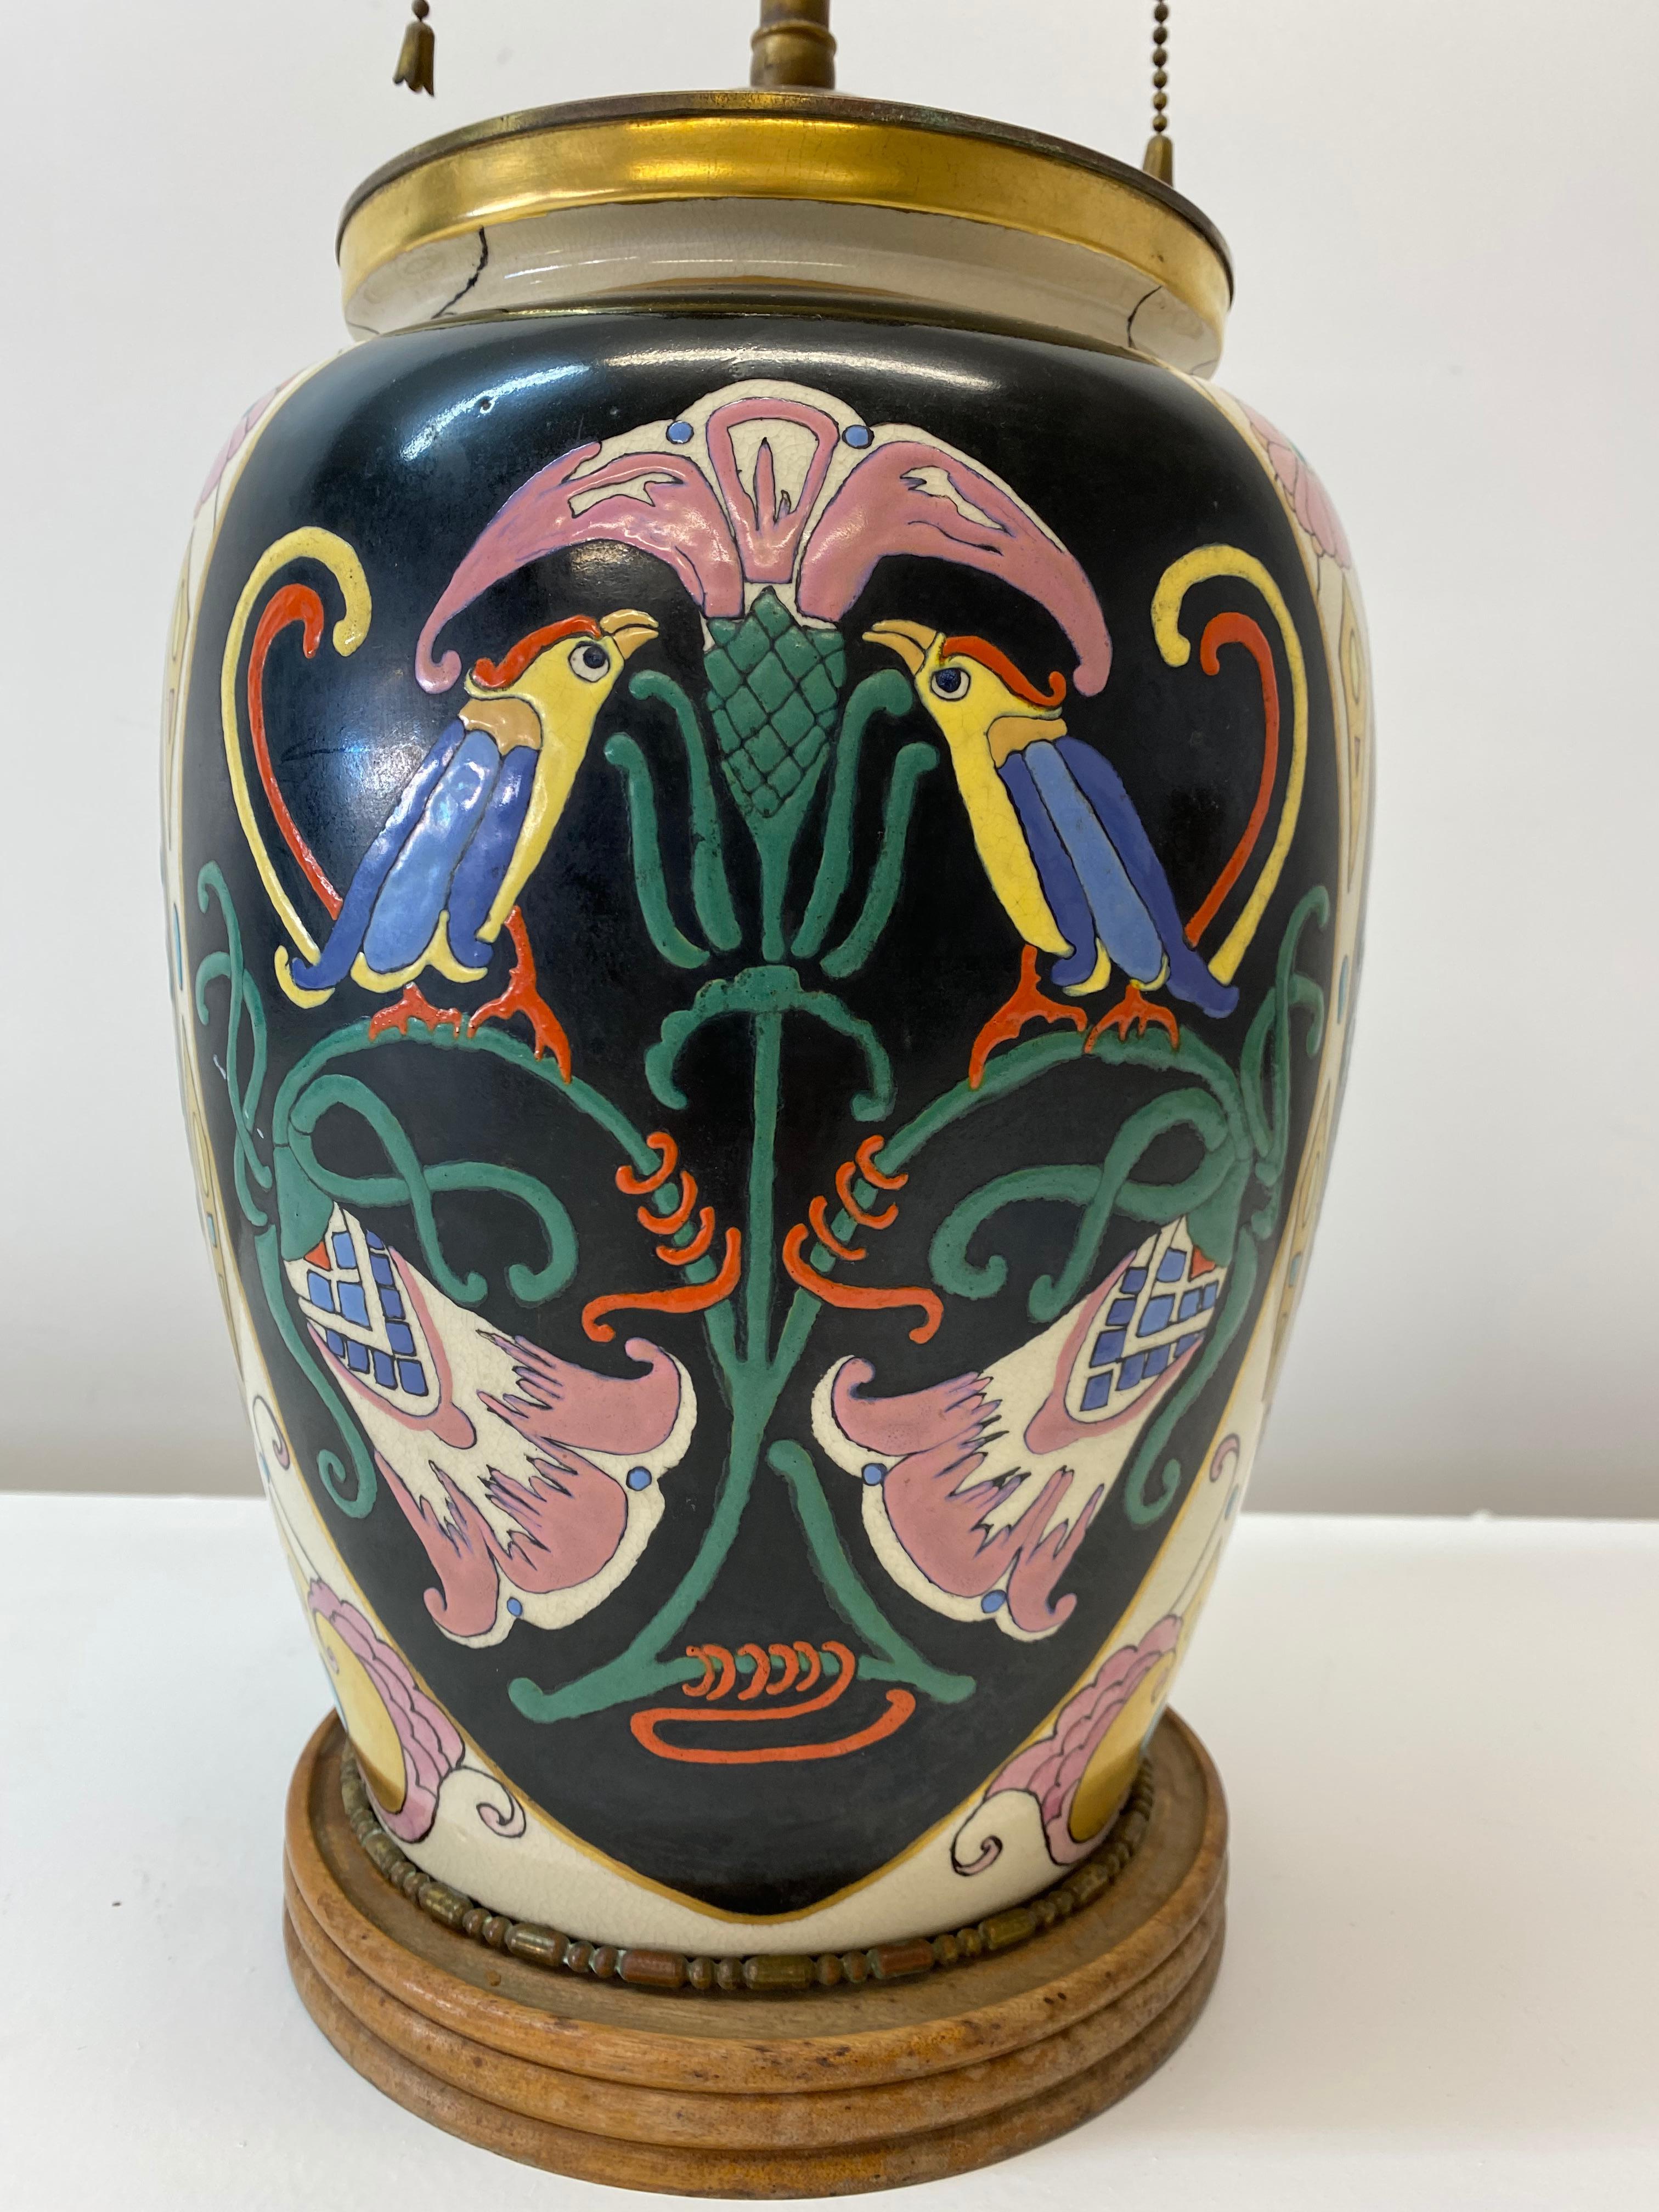 Antique Art Nouveau ceramic vase table lamp conversion for Restoration

Absolutely gorgeous handmade, hand painted Art Nouveau vase, circa 1890-1910

The vase was converted into a table lamp, circa 1920s-1930s

Measures: 7.5